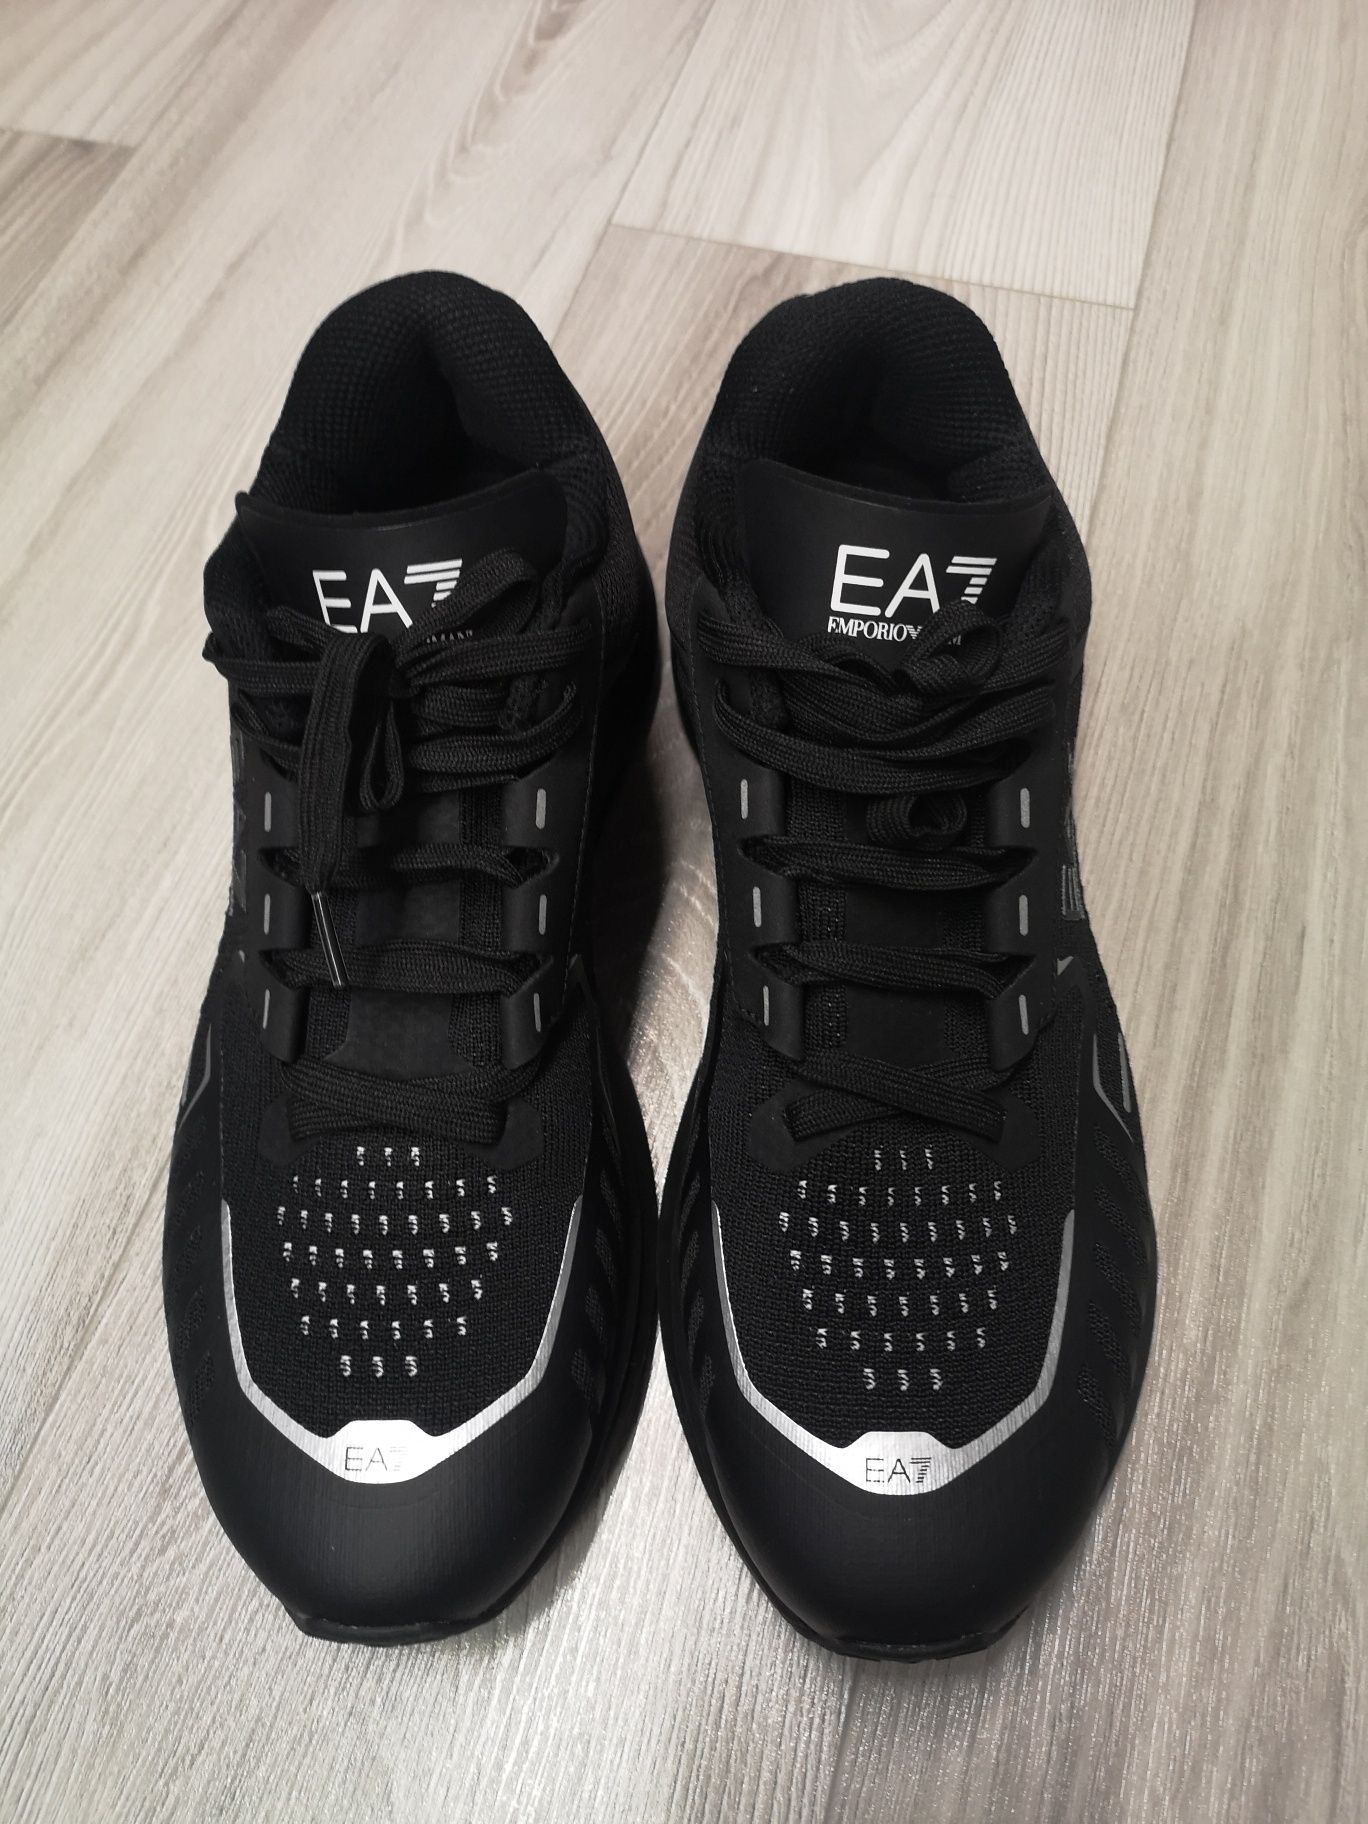 Buty sneakersy EA7 Emporio Armani r. 44 2/3